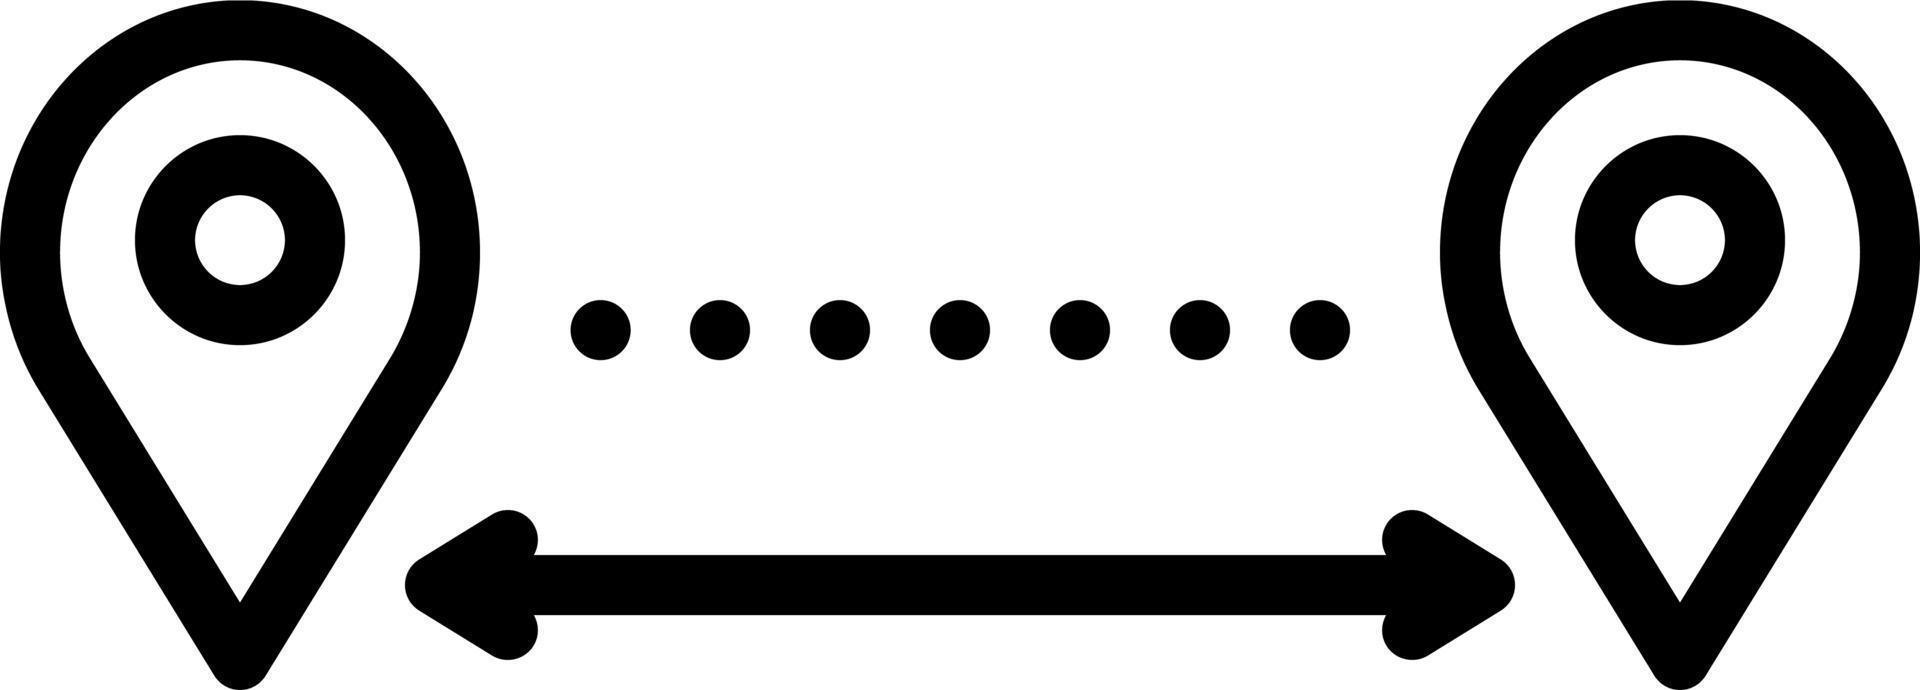 Liniensymbol für Entfernungen vektor